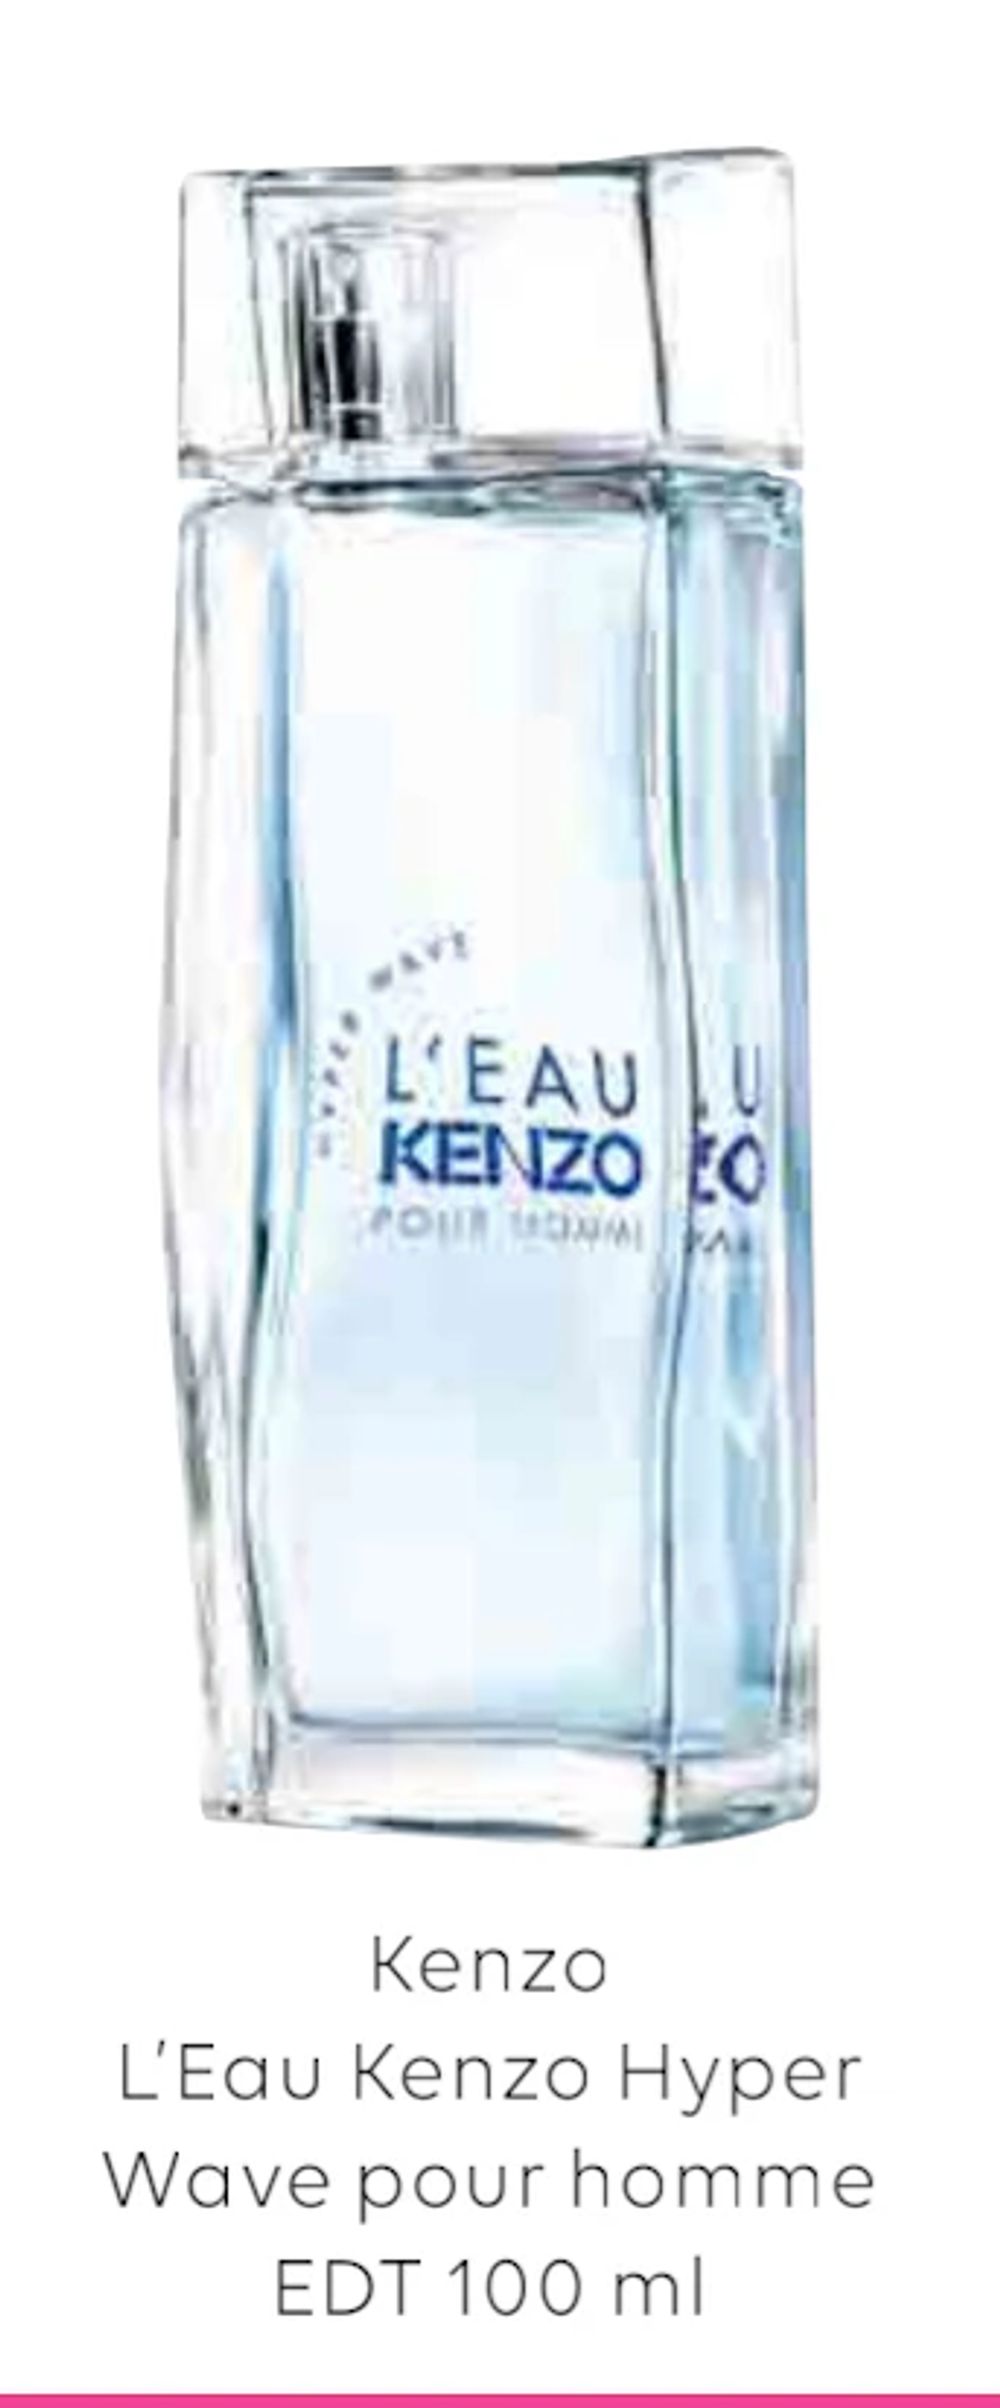 Tilbud på Kenzo L’Eau Kenzo Hyper Wave pour homme EDT 100 ml fra Scandlines Travel Shop til 299 kr.